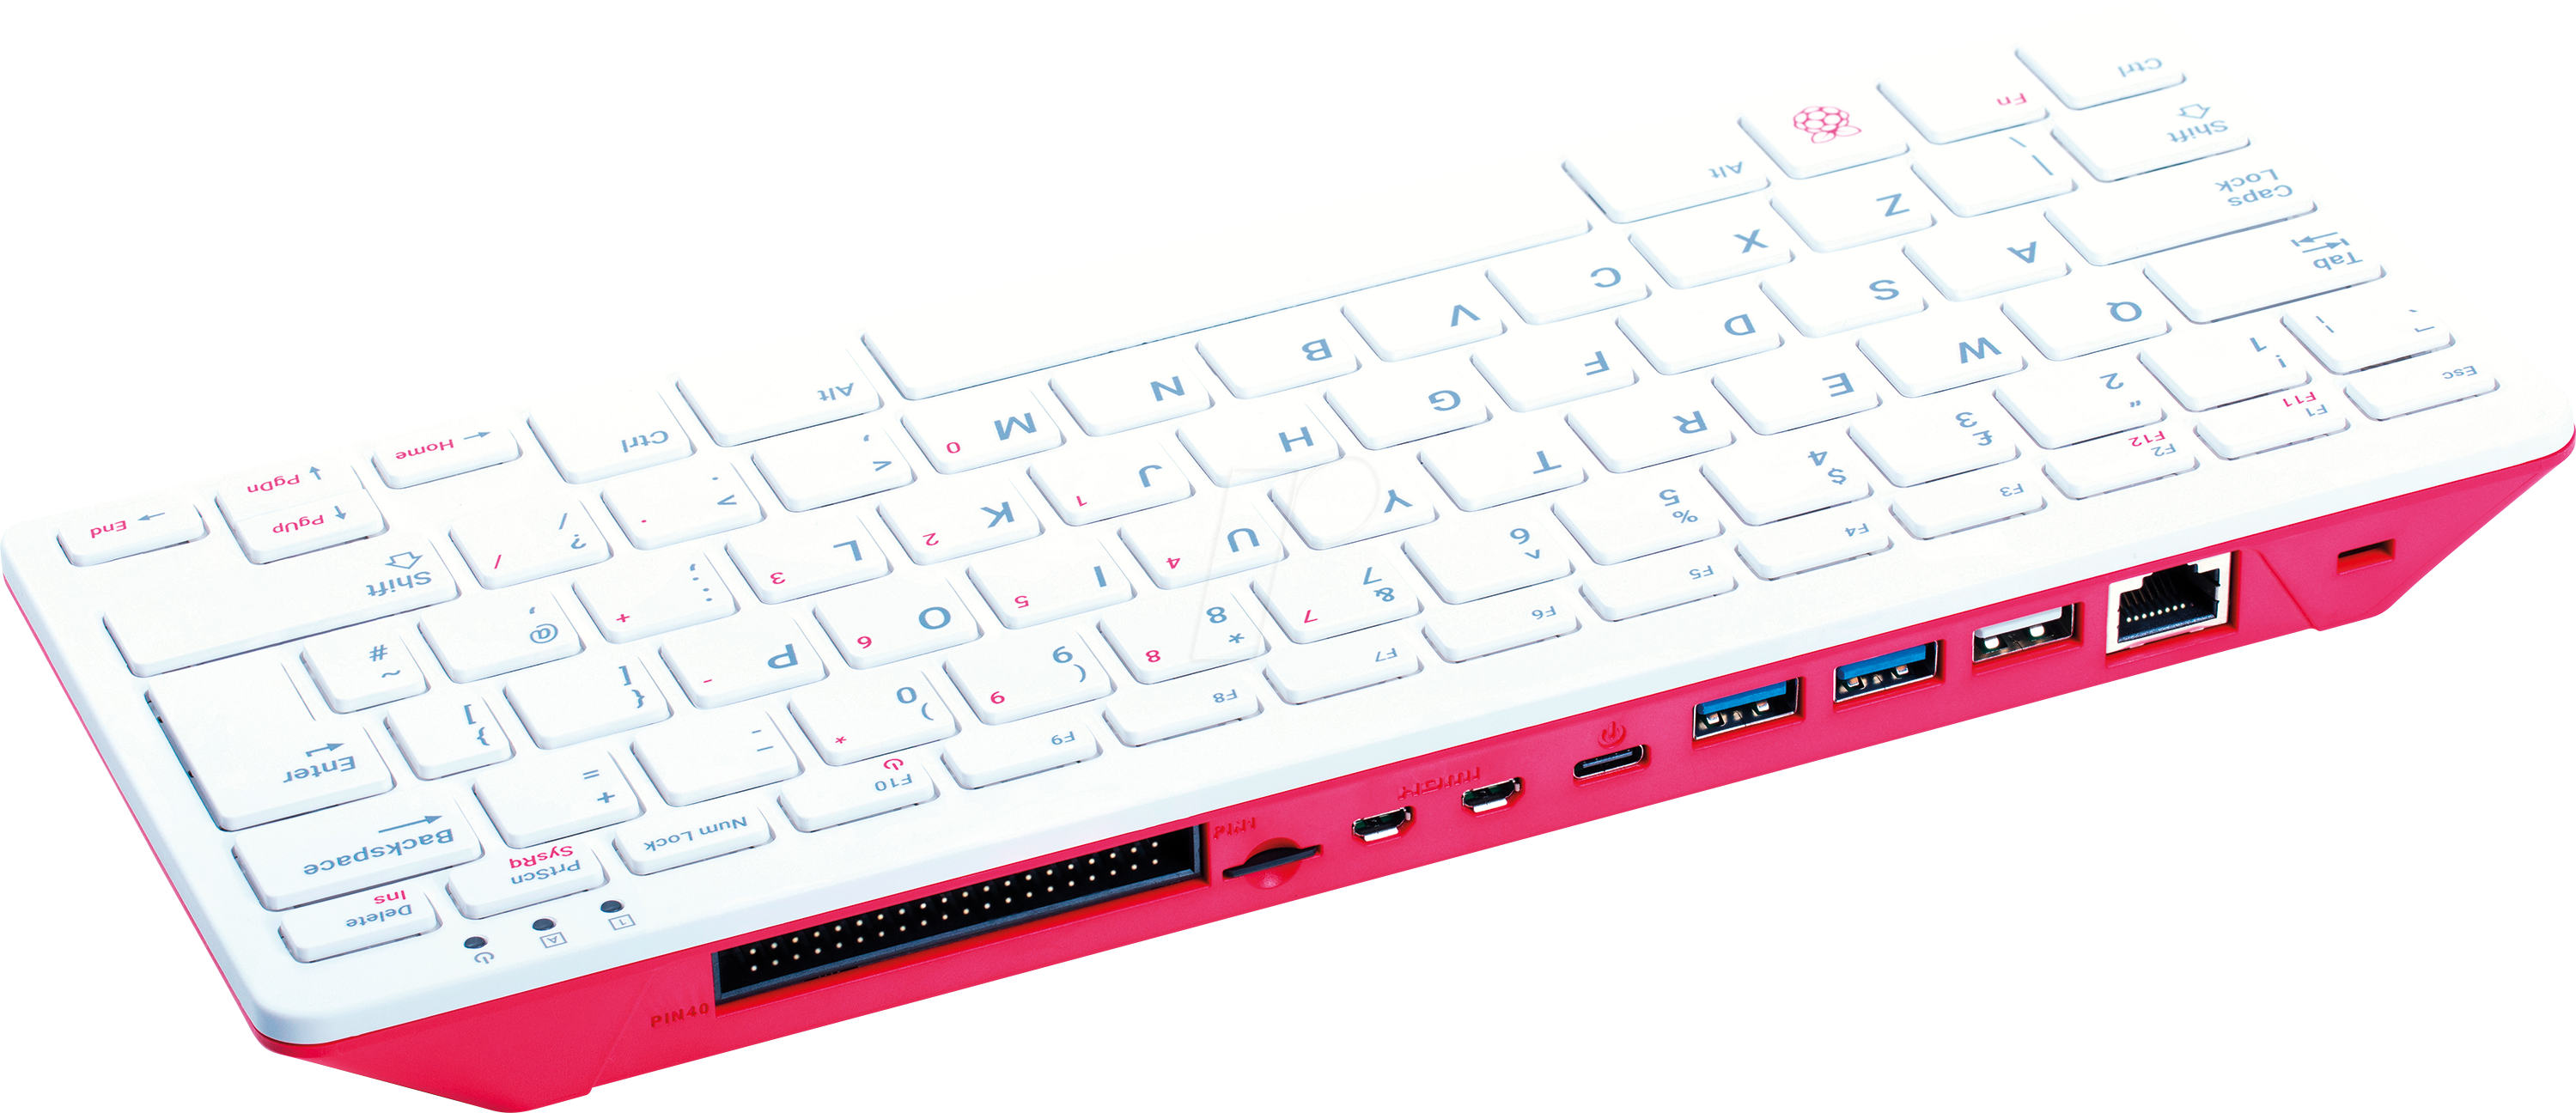 RASP PI400IT - Raspberry Pi 400 (IT), 4x 1,8GHz, 4GB RAM